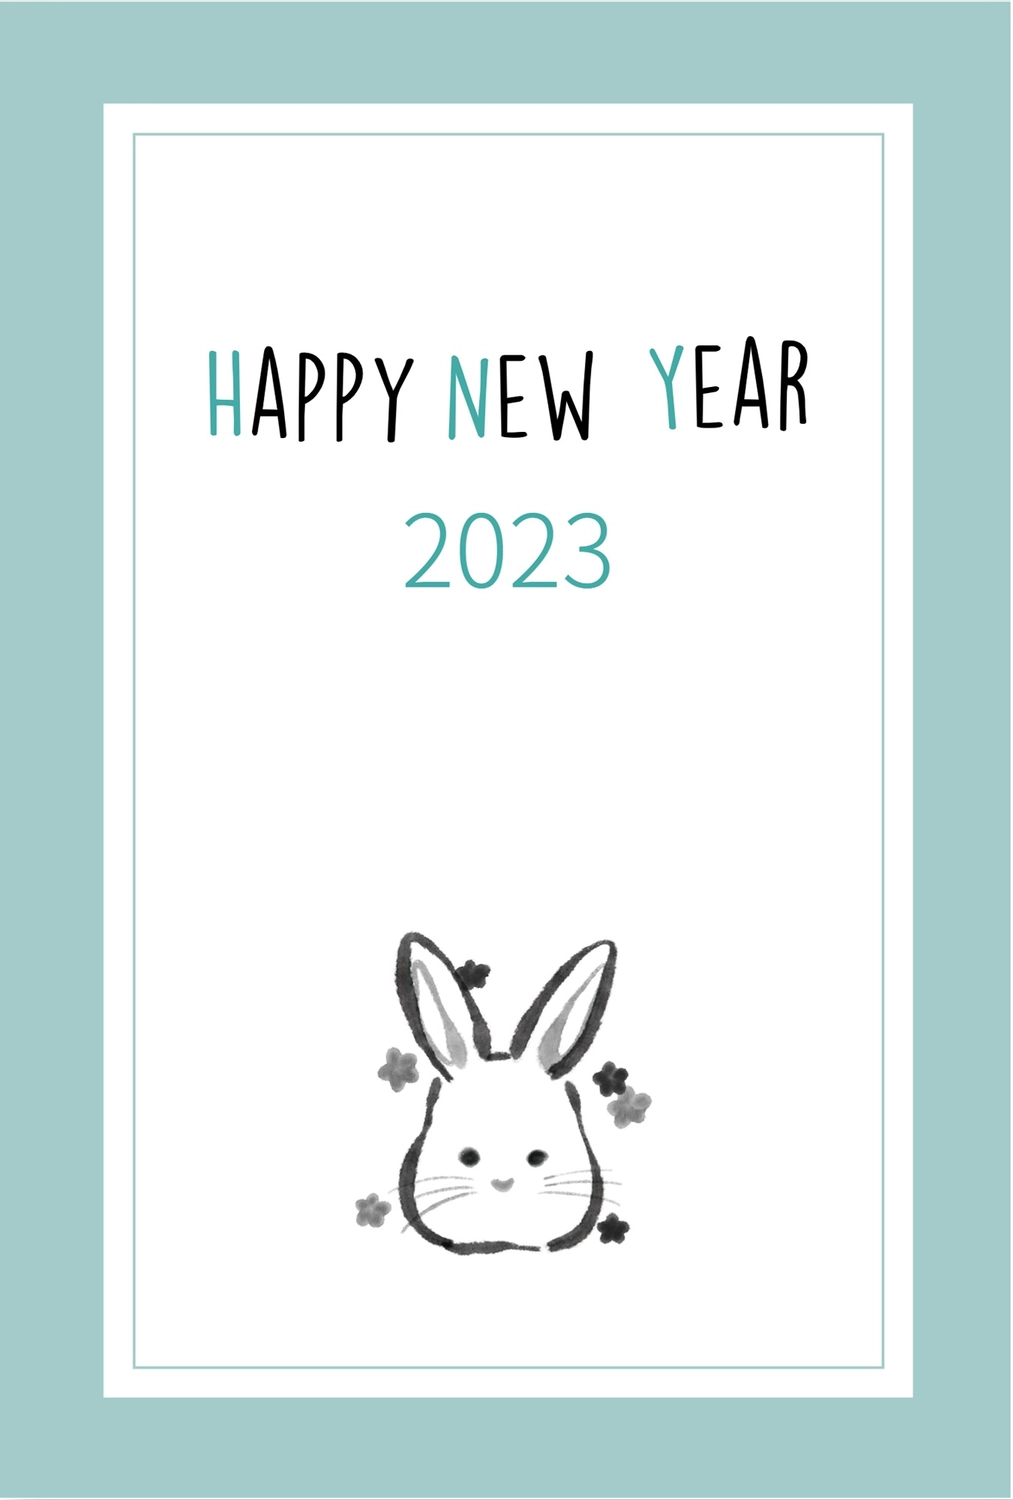 水墨画うさぎの年賀状　縦, White background, margin, Happy New Year, New Year Card template